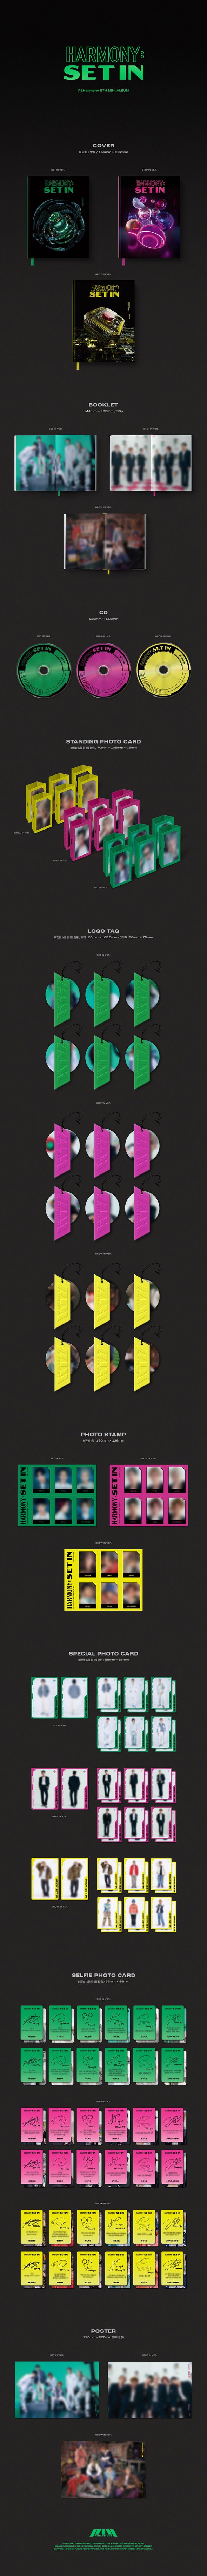 P1HARMONY - 5th Mini Album 'HARMONY: SET IN